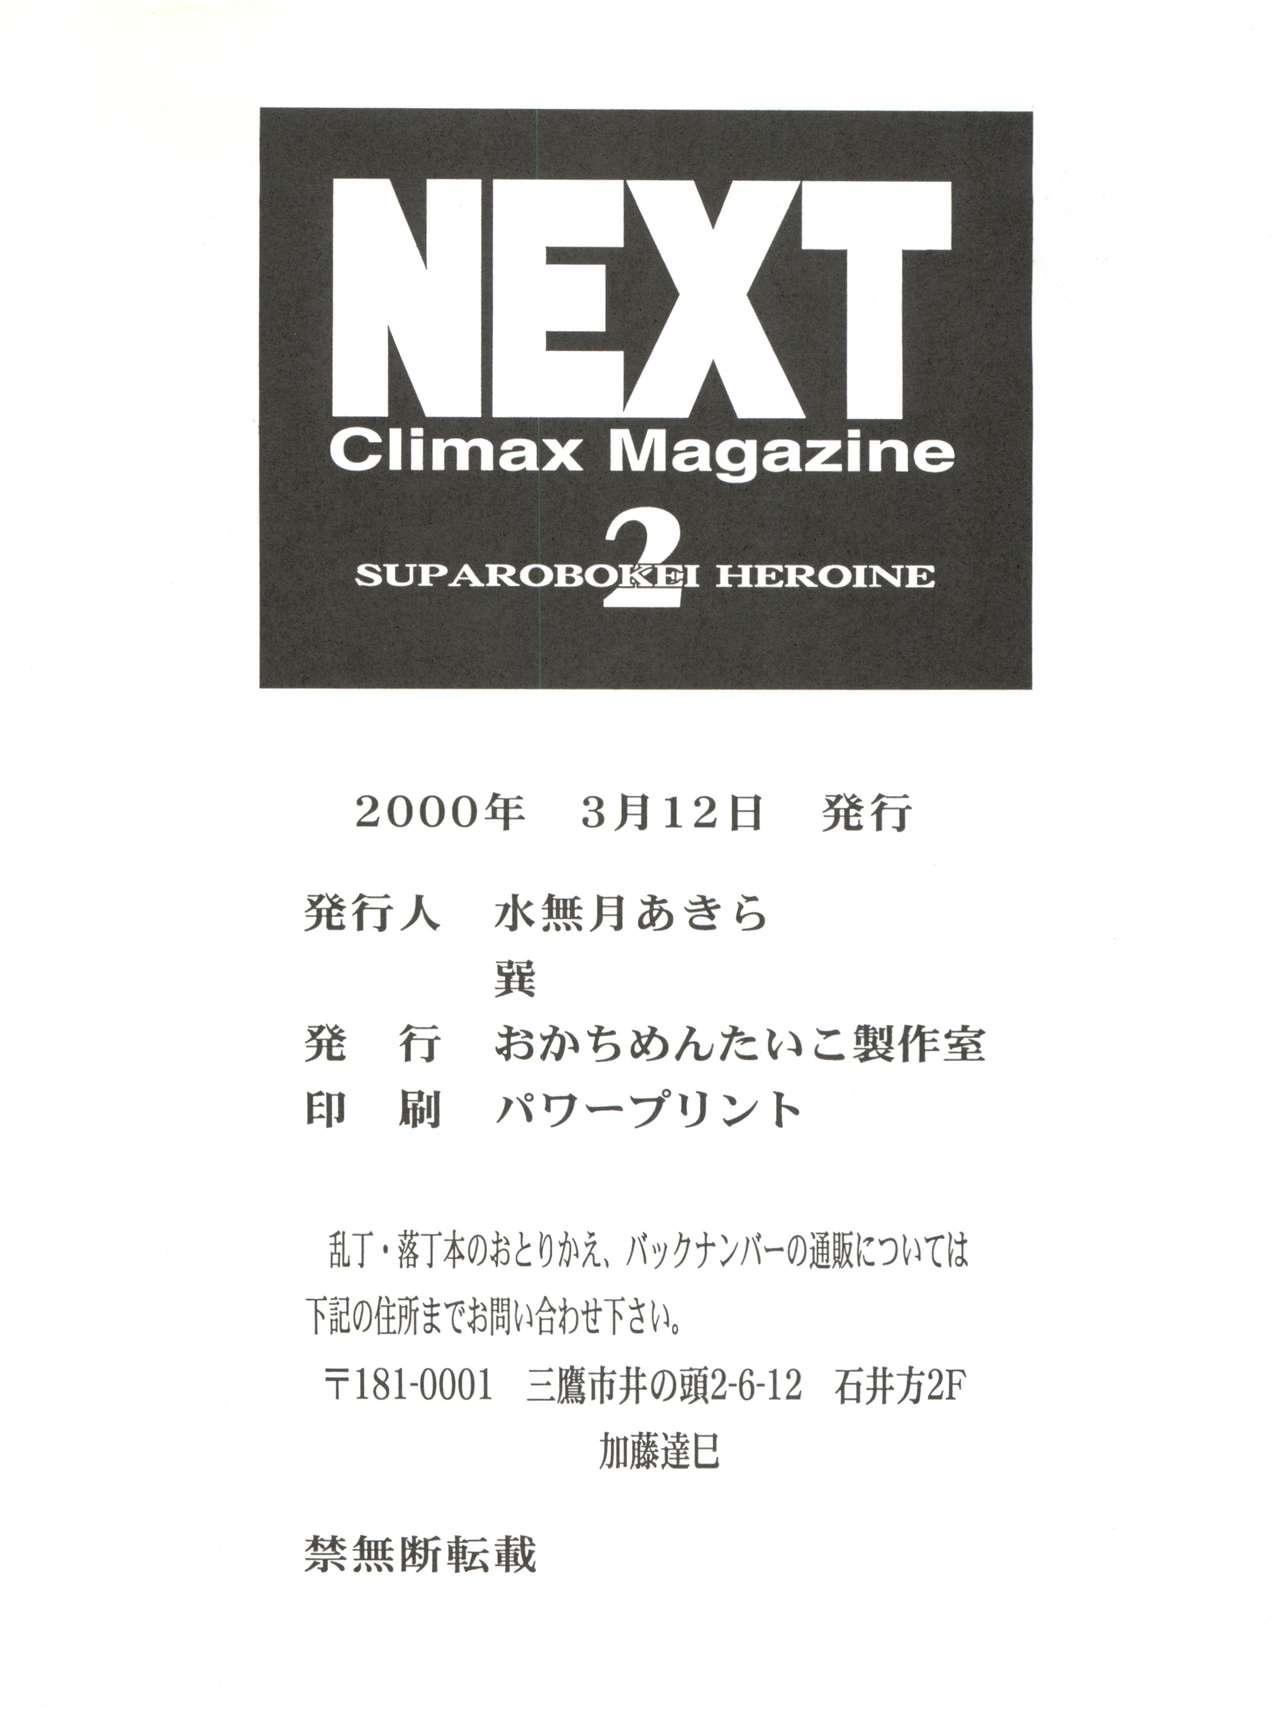 NEXT Climax Magazine 2 Suparobokei Heroine 84